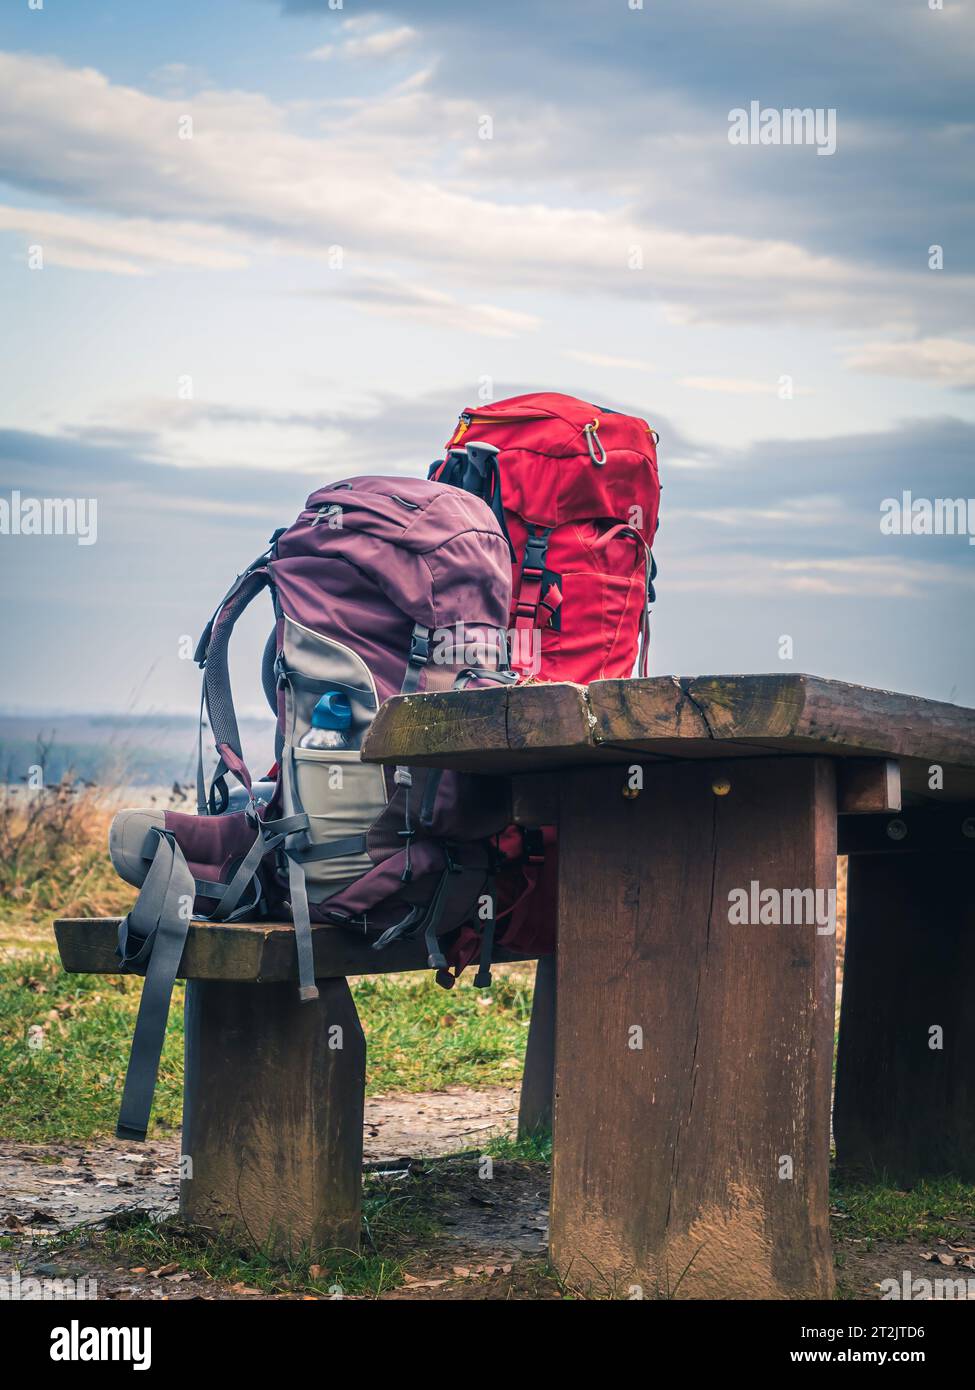 Deux sacs à dos trekking alpinisme randonnée sur un banc en bois rouge violet, pas de gens Banque D'Images